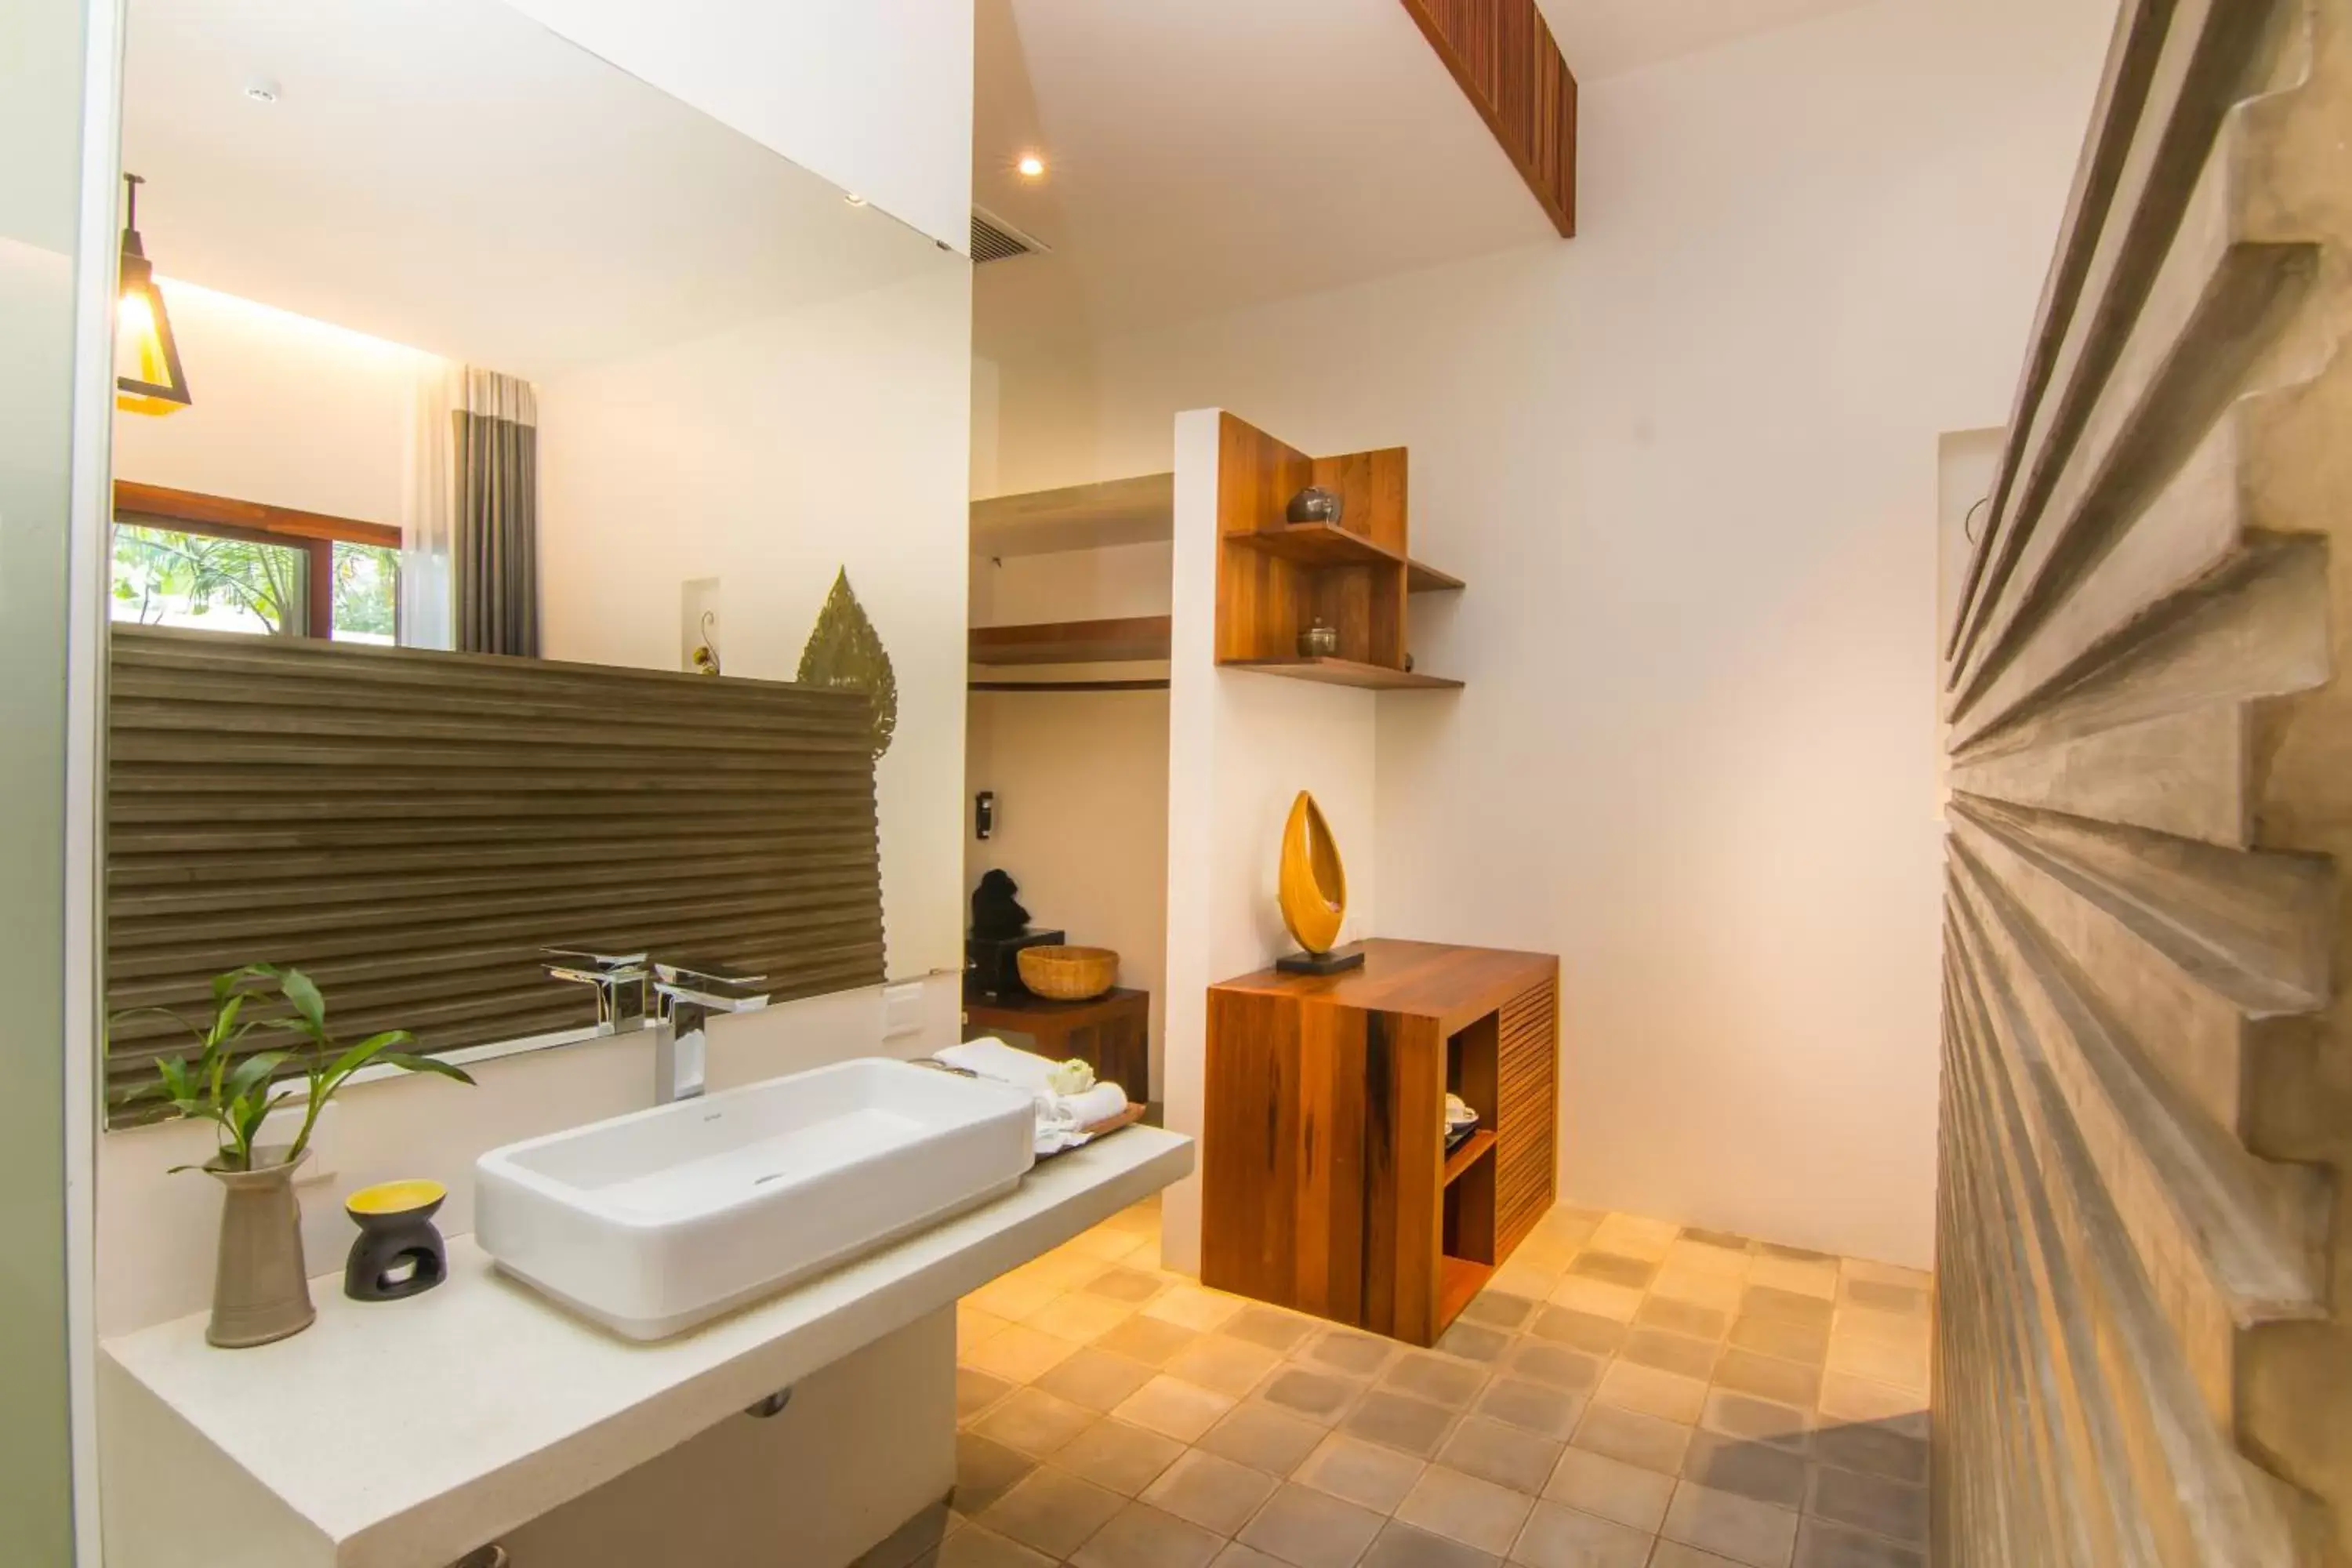 Bathroom in Apsara Residence Hotel